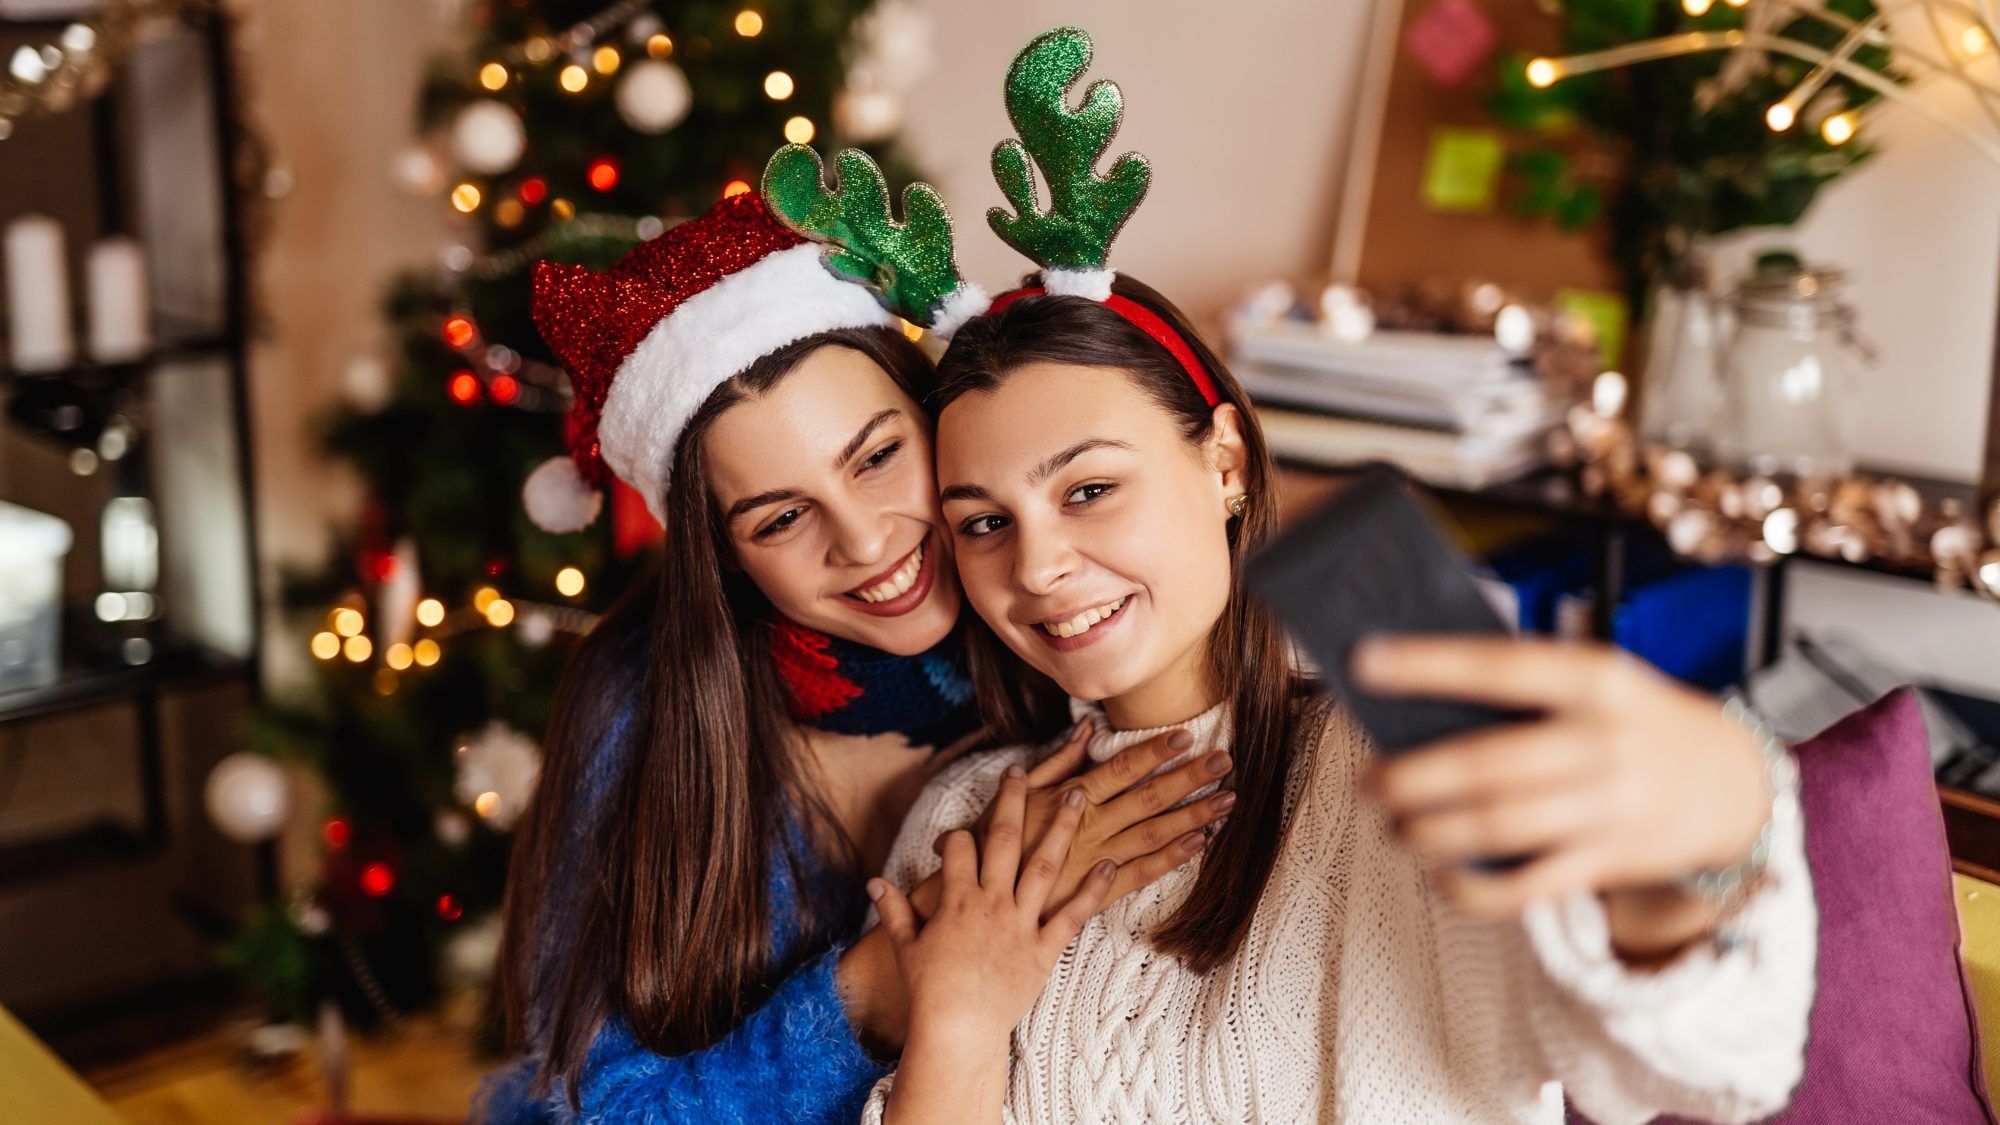 Hur man firar julen säkert 2020 under koronavirus - systrar tar bild tillsammans i julhuvudbonader